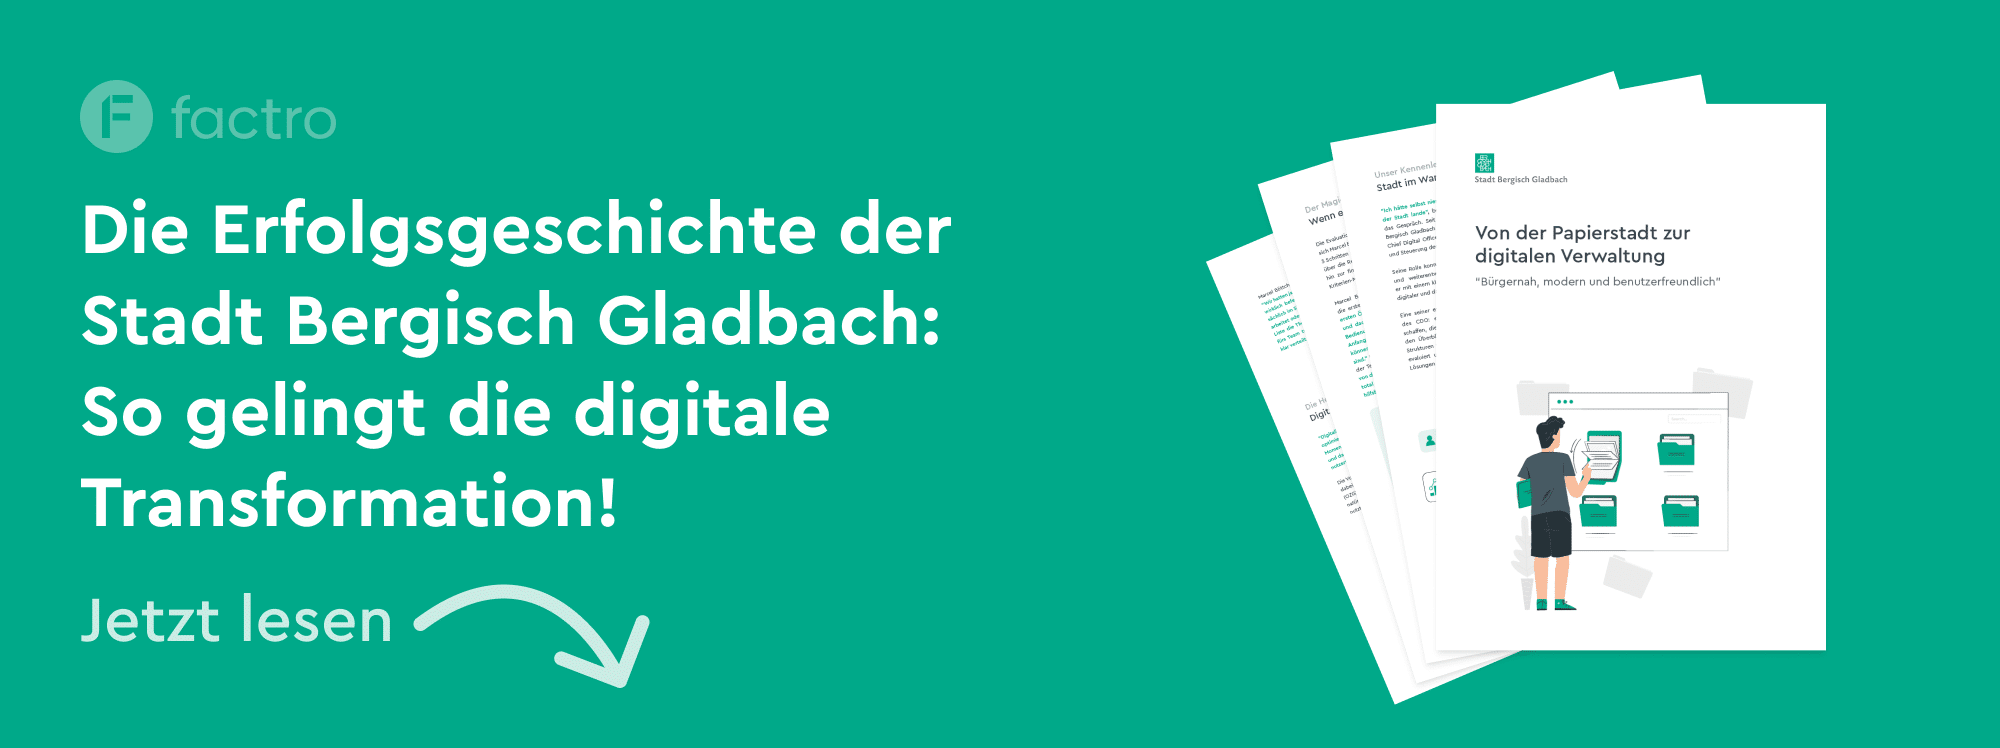 Eine Grafik mit einer Vorschau auf die Erfolgsgeschichte der Stadt Bergisch Gladbach und dem Text "Die Erfolgsgeschichte der Stadt Bergisch Gladbach: So gelingt die digitale Transformation! Jetzt lesen"